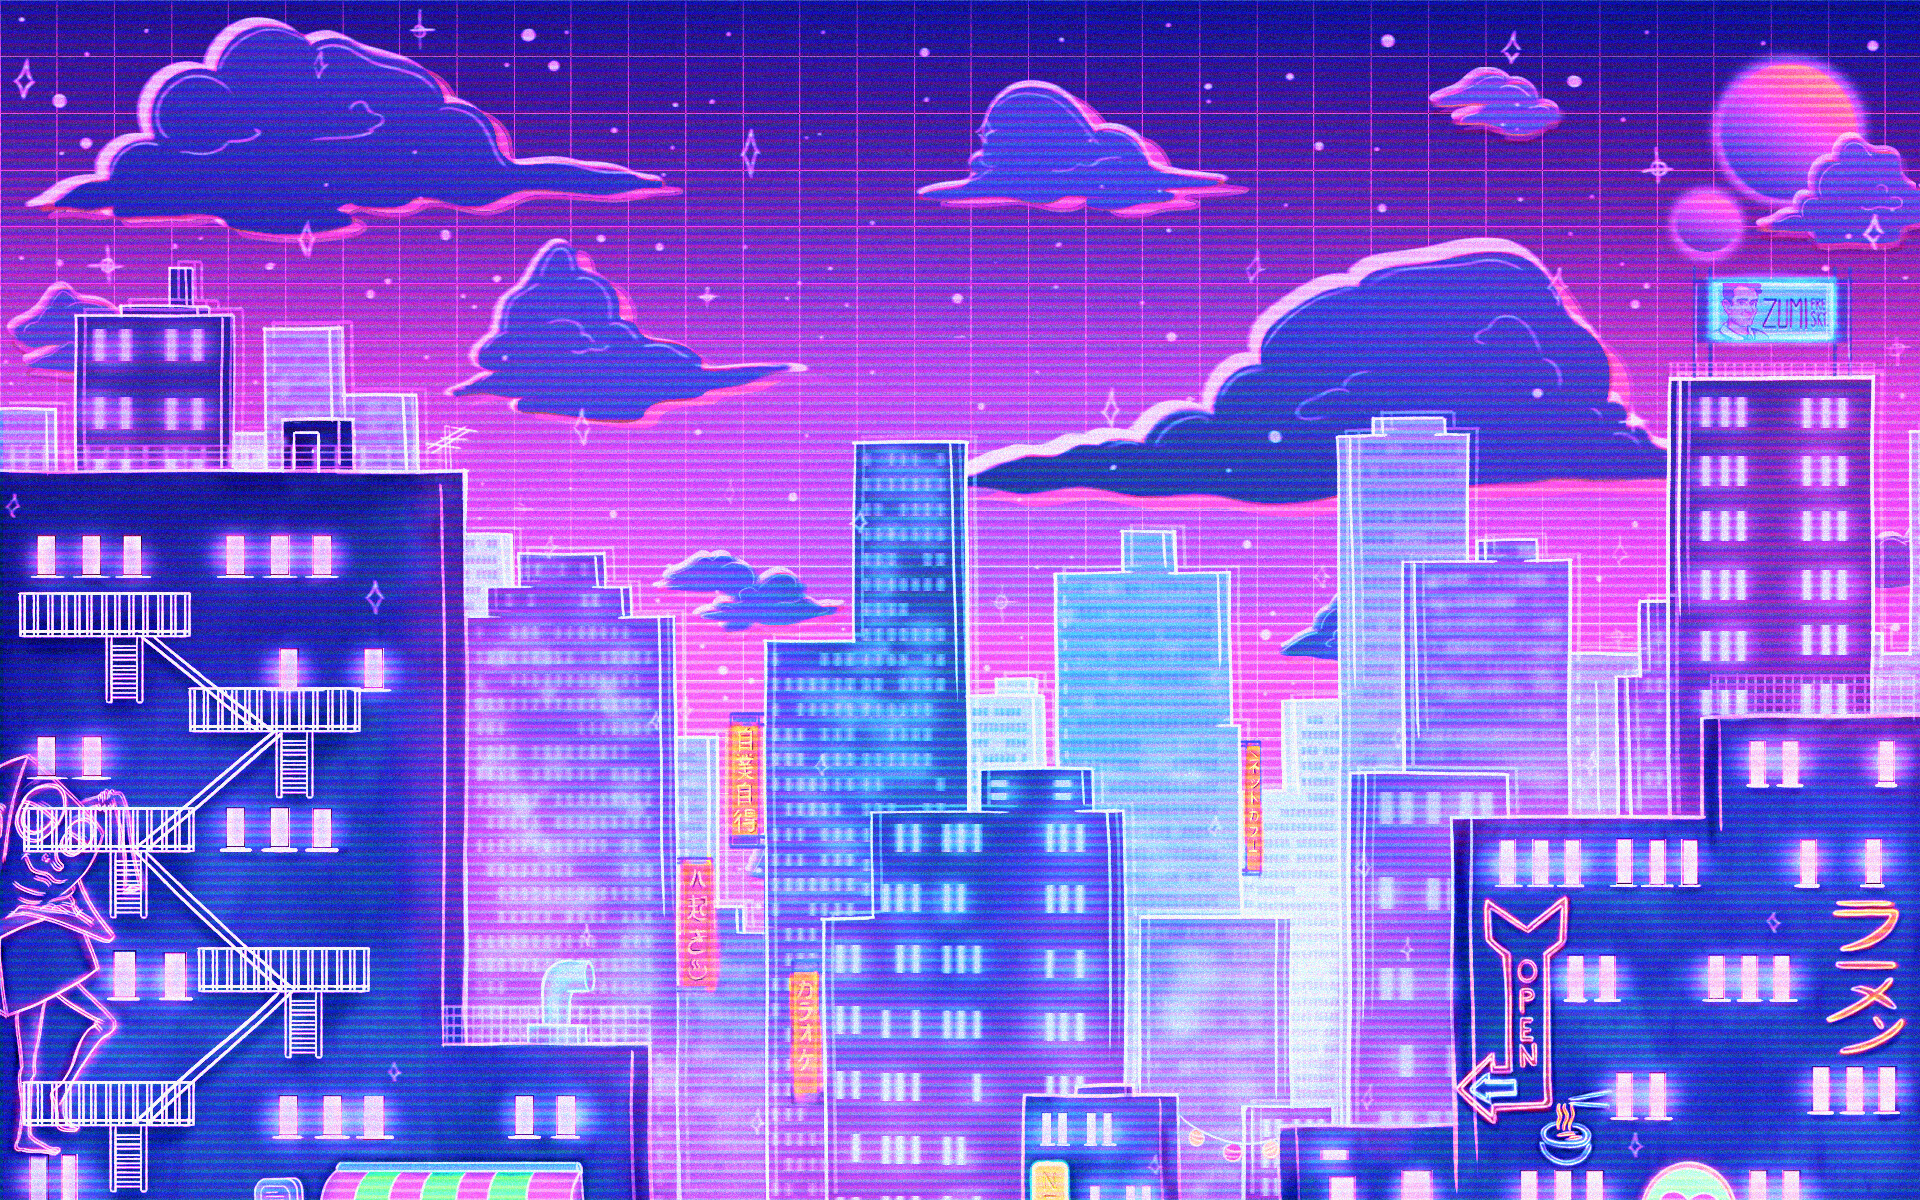 ArtStation - Retro city wallpaper